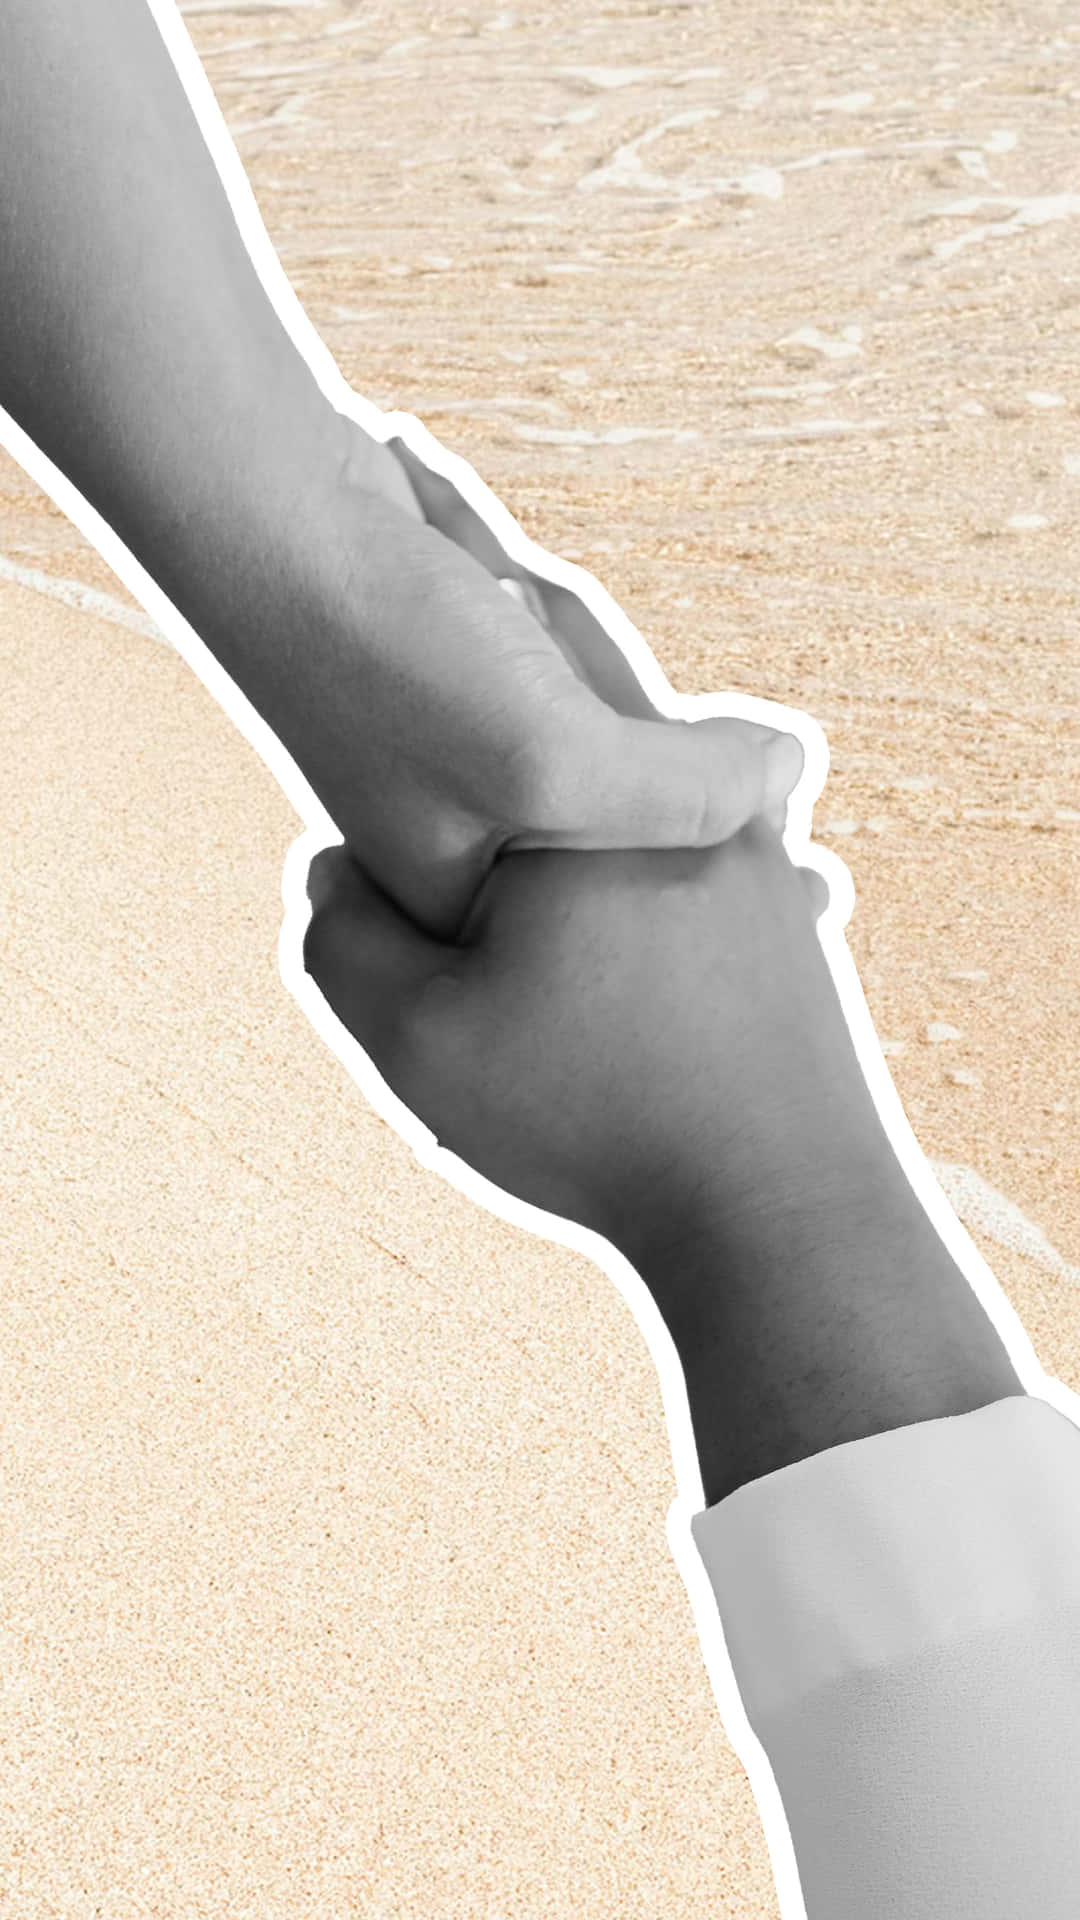 Handshake On Beach Wallpaper